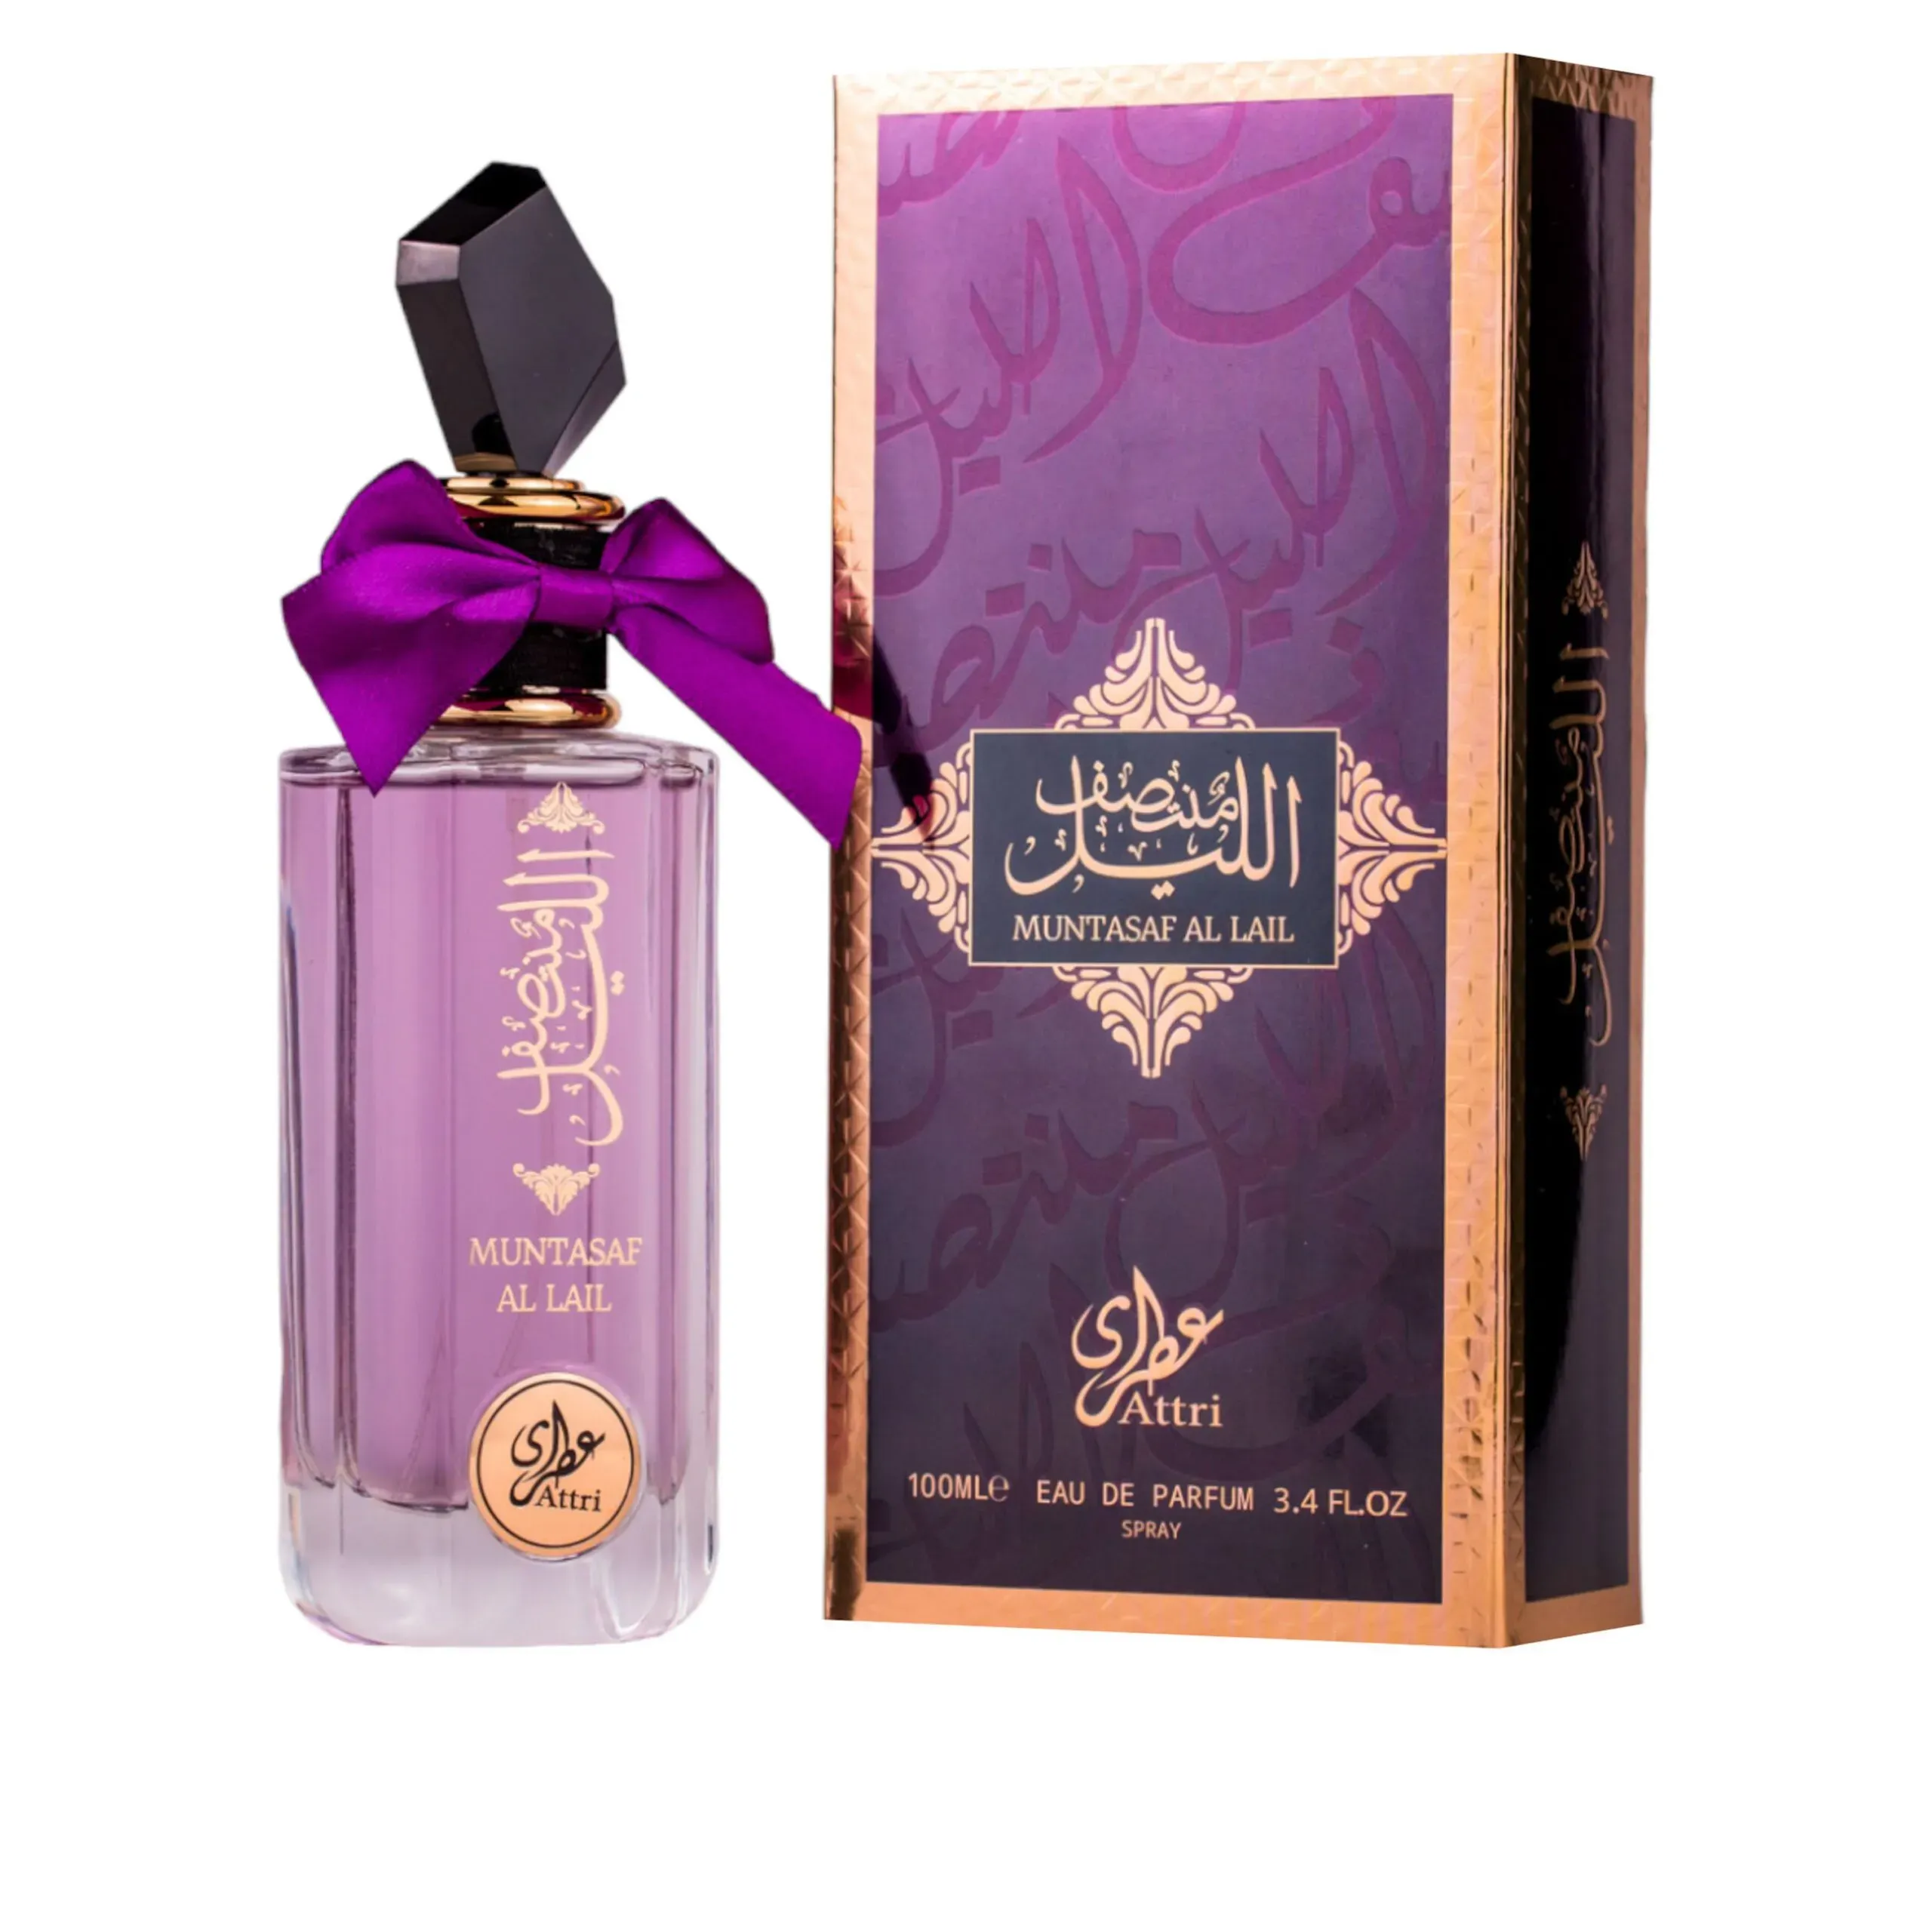 Muntasaf Al Lail – Eau De Parfum